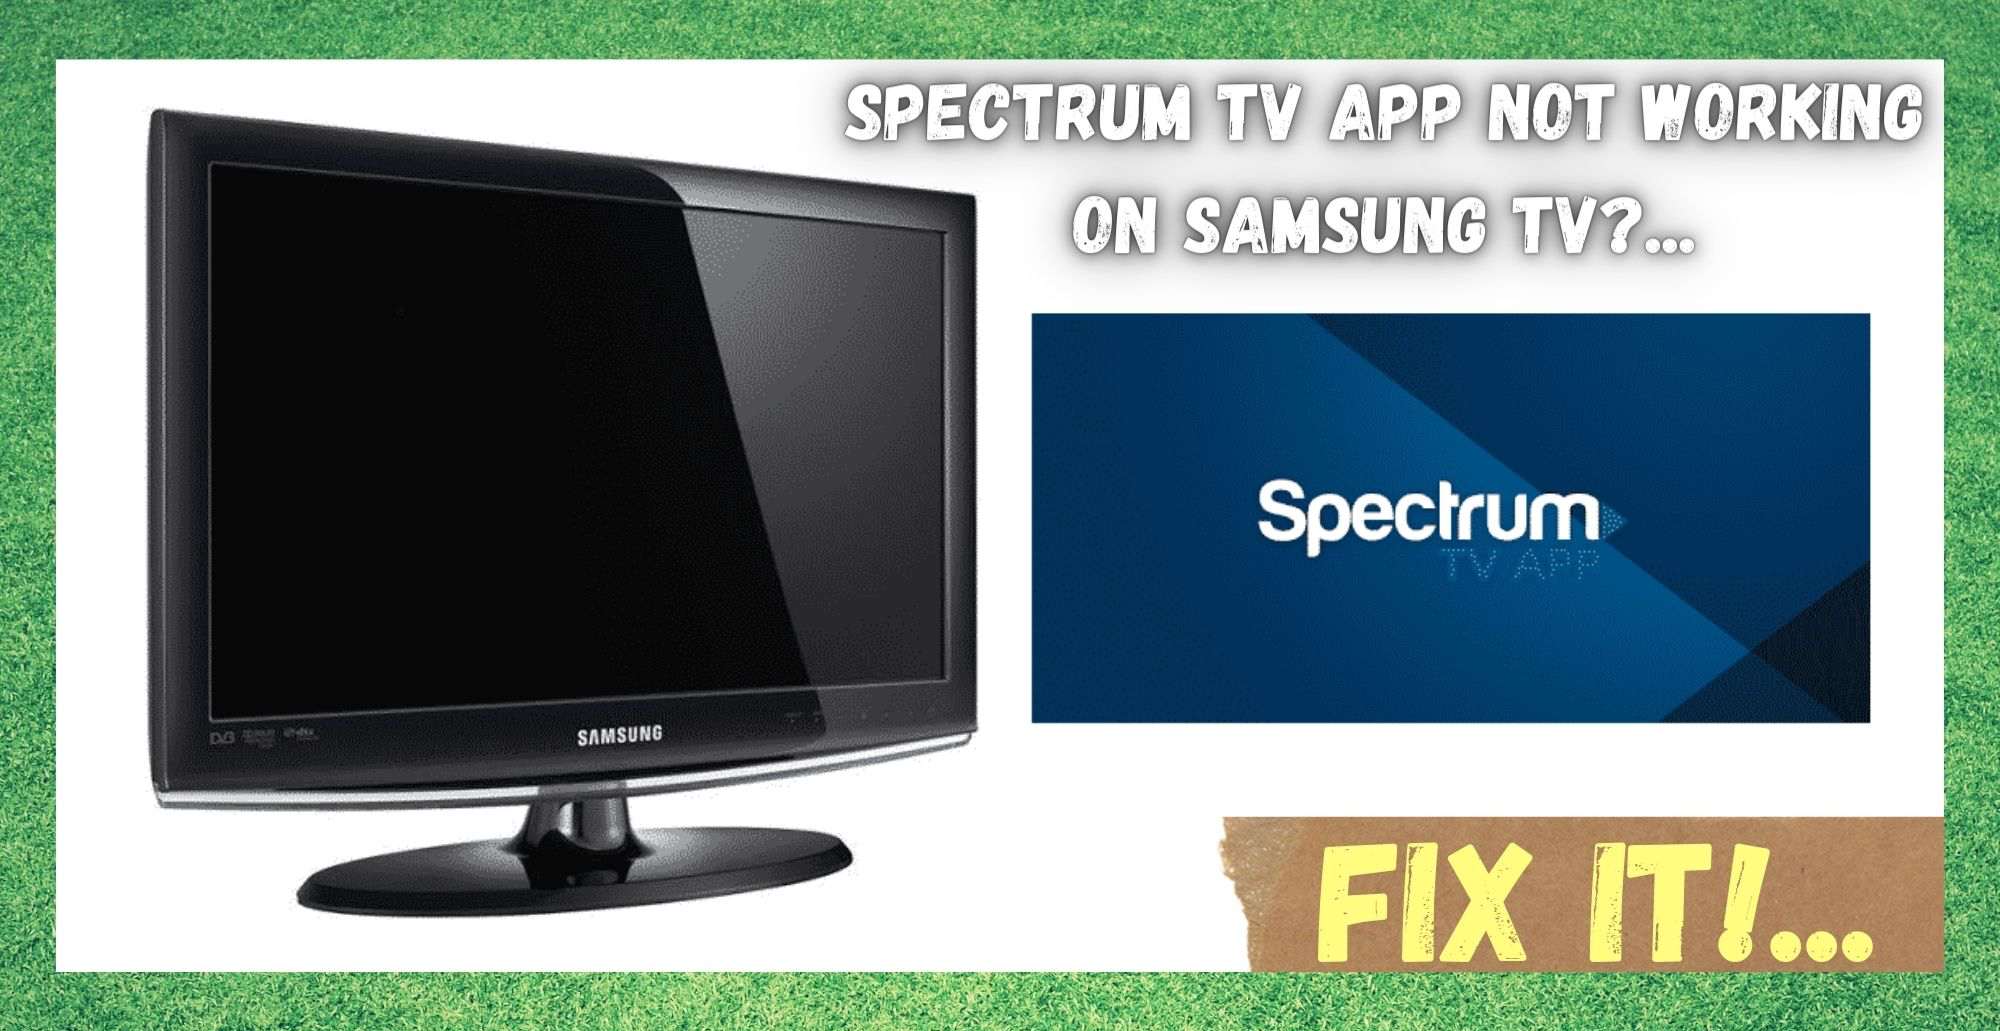 Spectrum TV App Not Working On Samsung TV